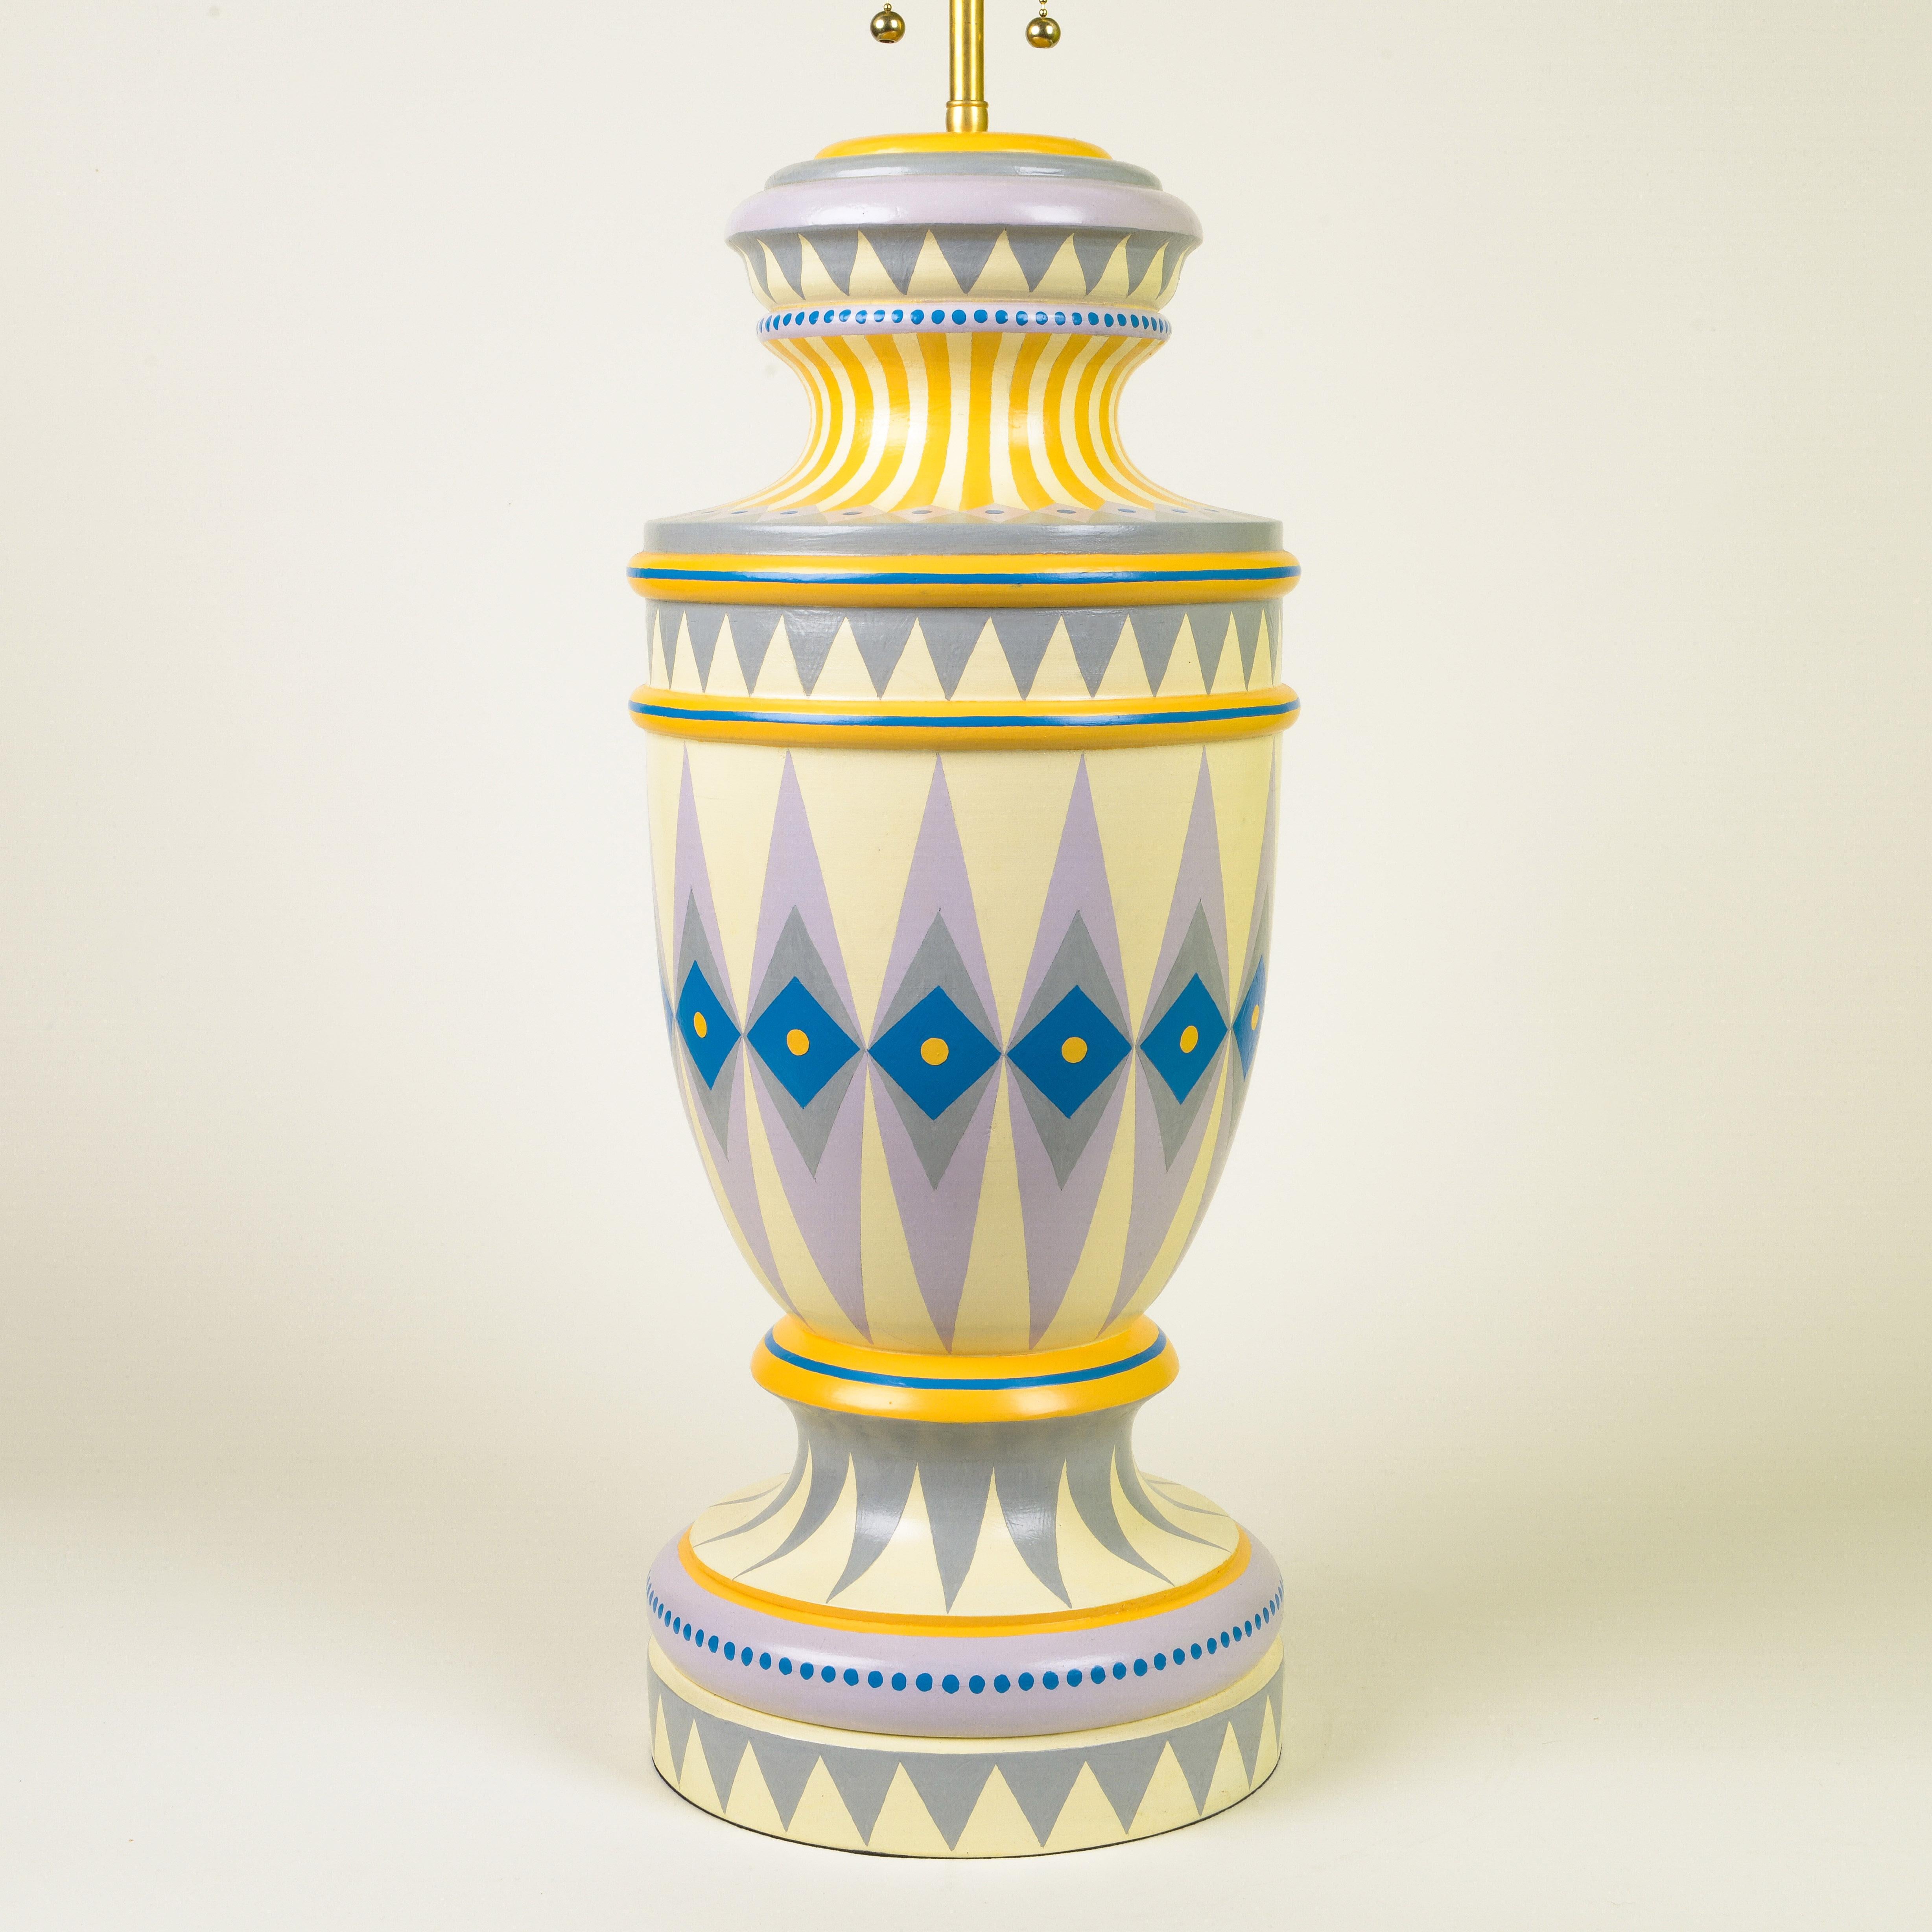 Base de lampe urne géante avec abat-jour assorti

Base de lampe urne géante peinte à la main avec abat-jour assorti orné de différentes nuances de violet, de bleu foncé et de jaune.

Cressida Bell est une designer britannique spécialisée dans les